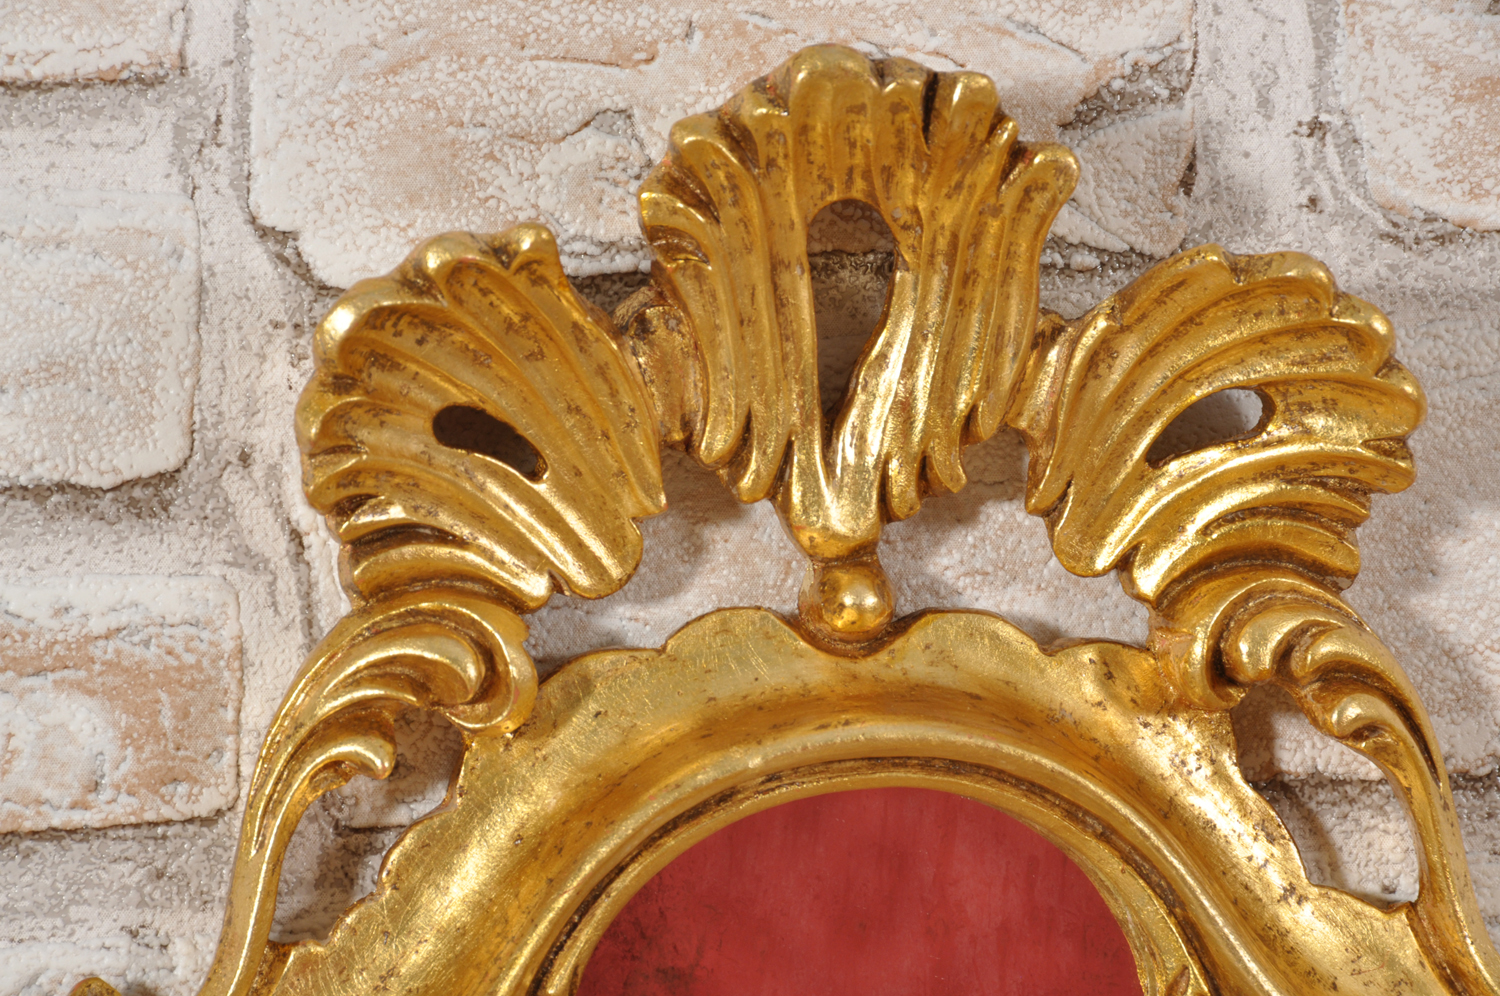 importante lavorazione made in Italy di intaglio della cornice veneziana di piccole misure scolpita a mano come il modello originale del 1700